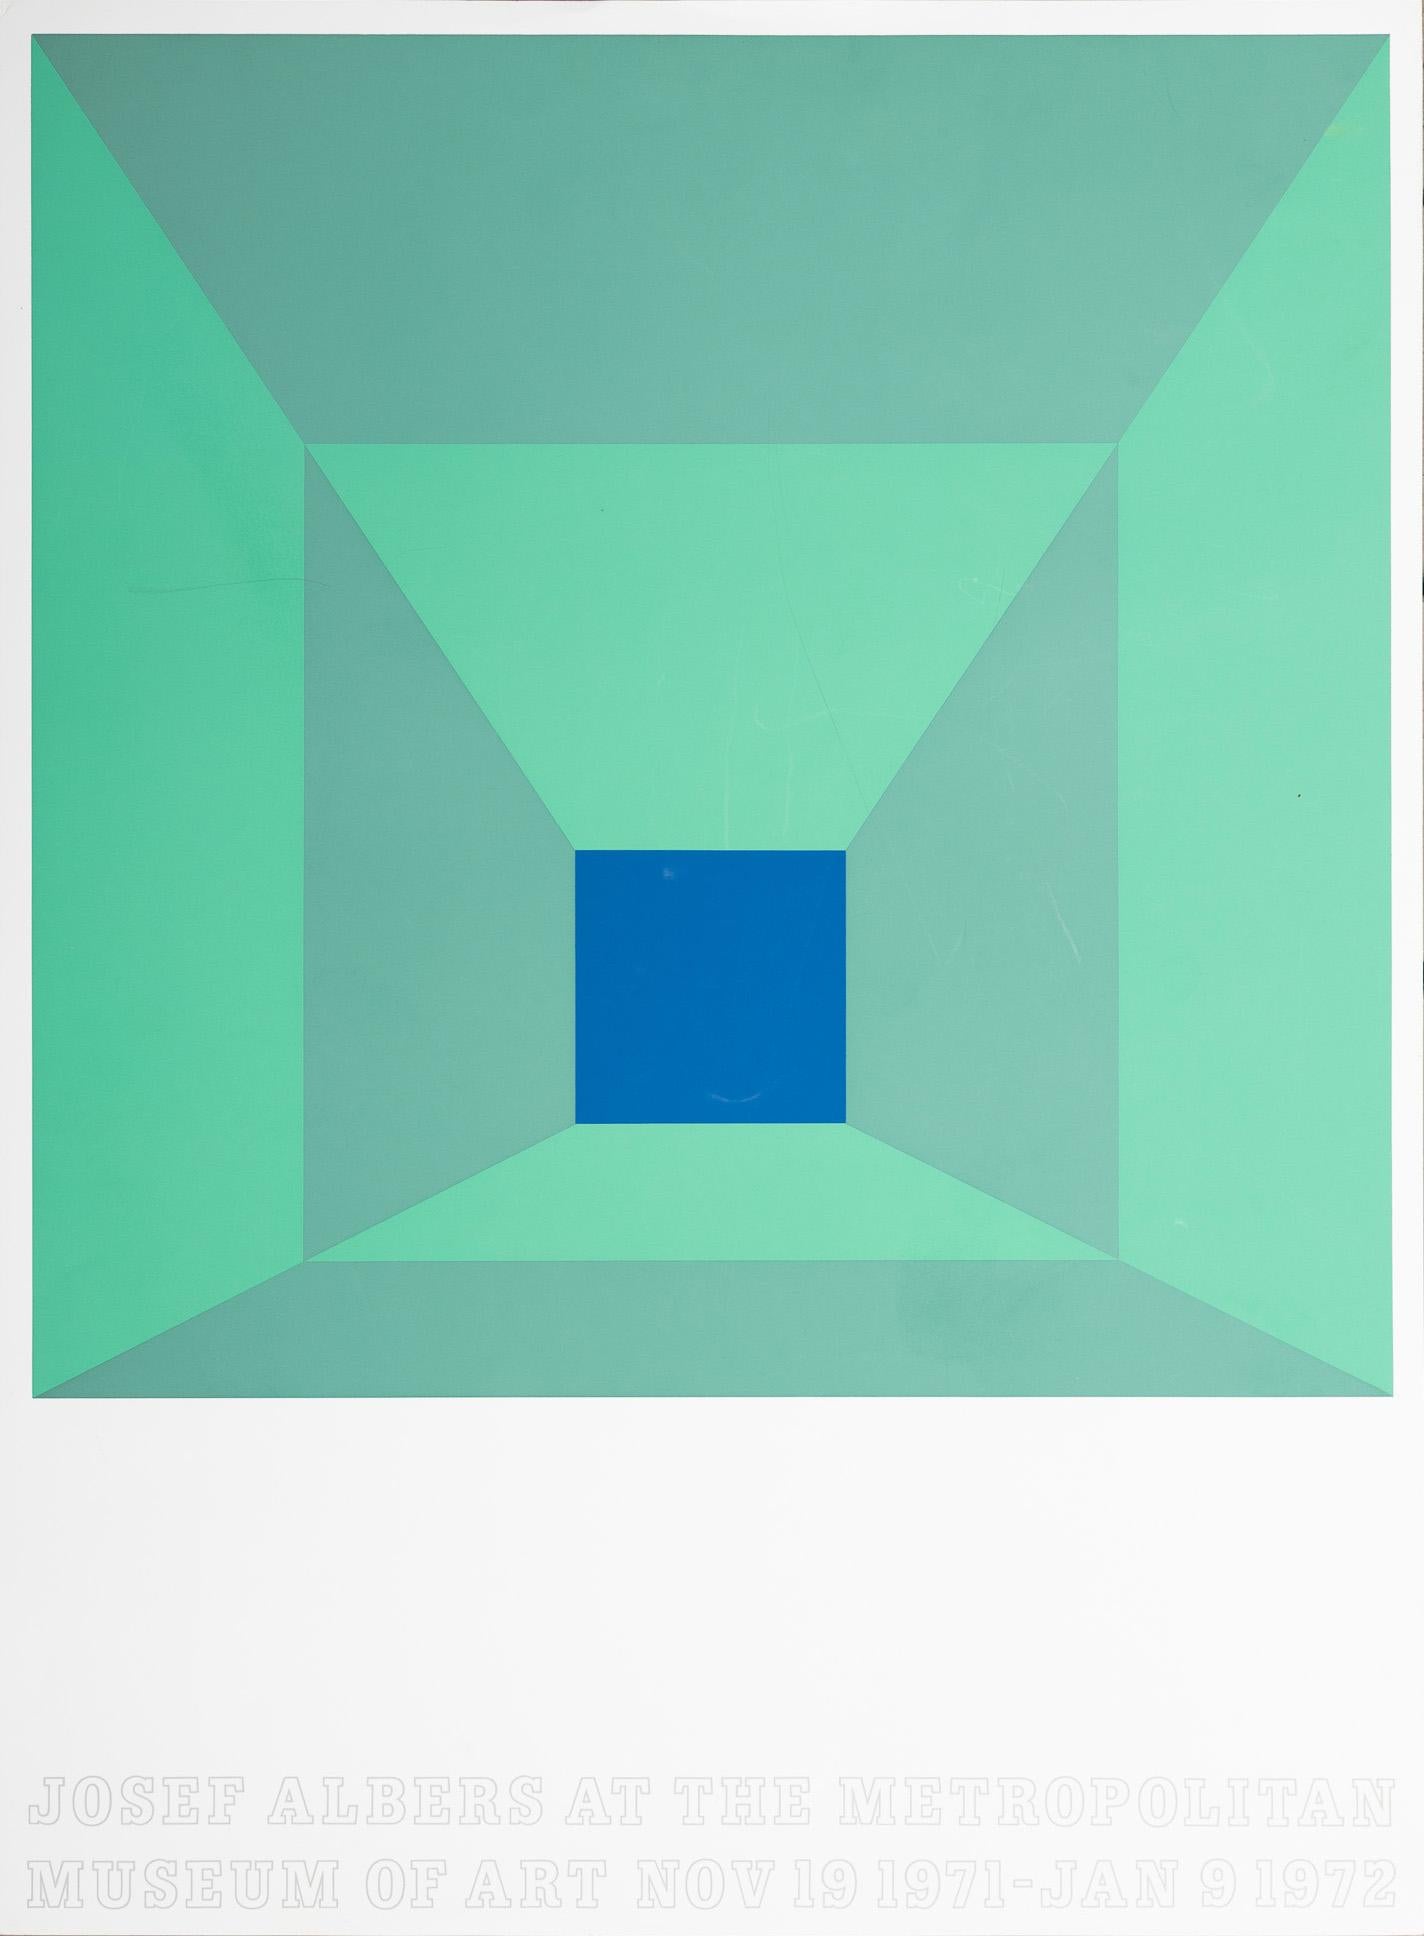 "Joseph Albers at the Met" Screen Print Poster